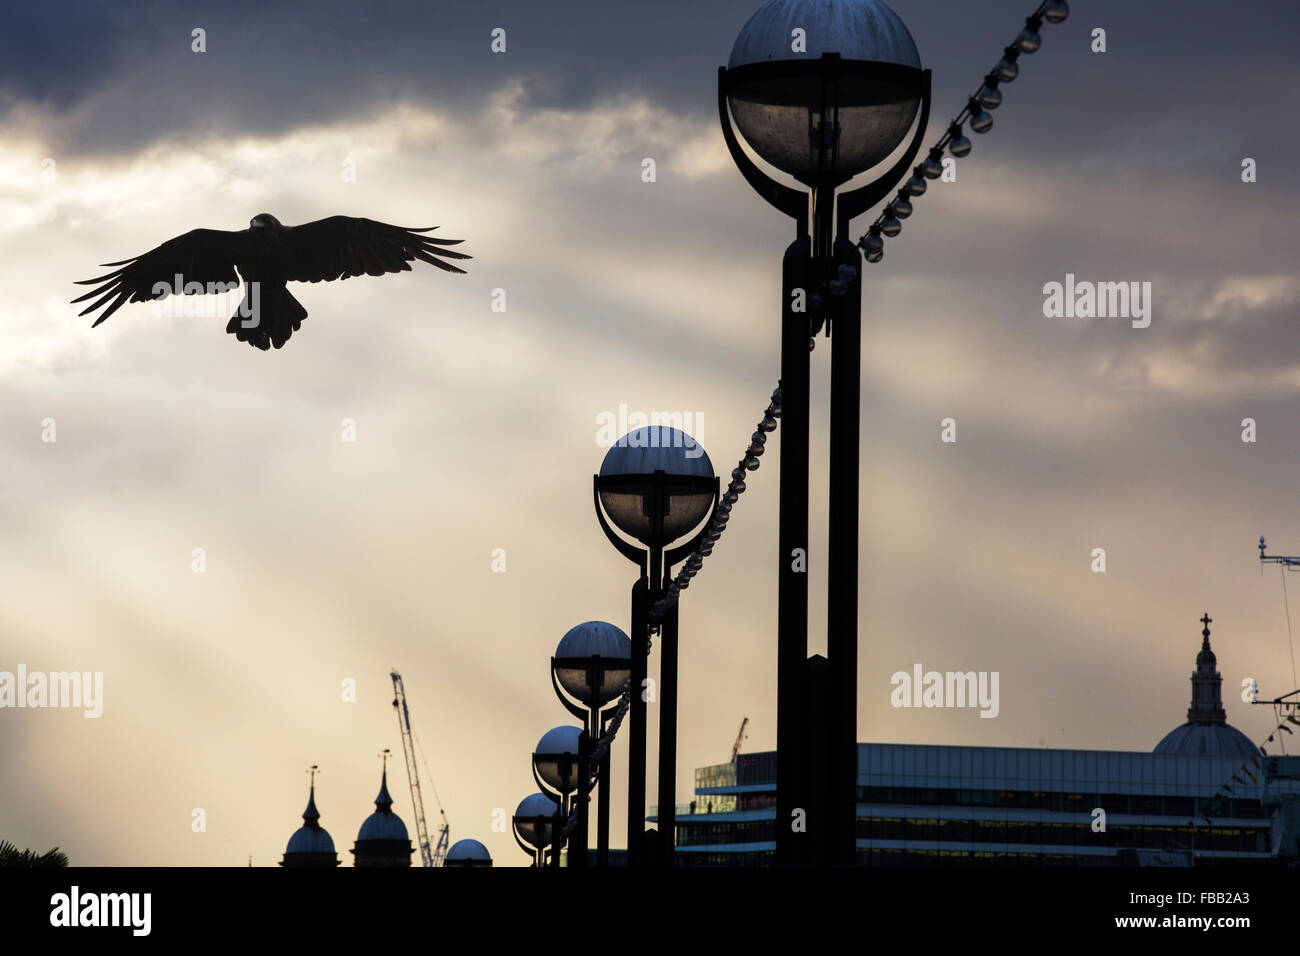 Le luci di strada sulla riva sud del Tamigi, London, Regno Unito con un corvo. Foto Stock